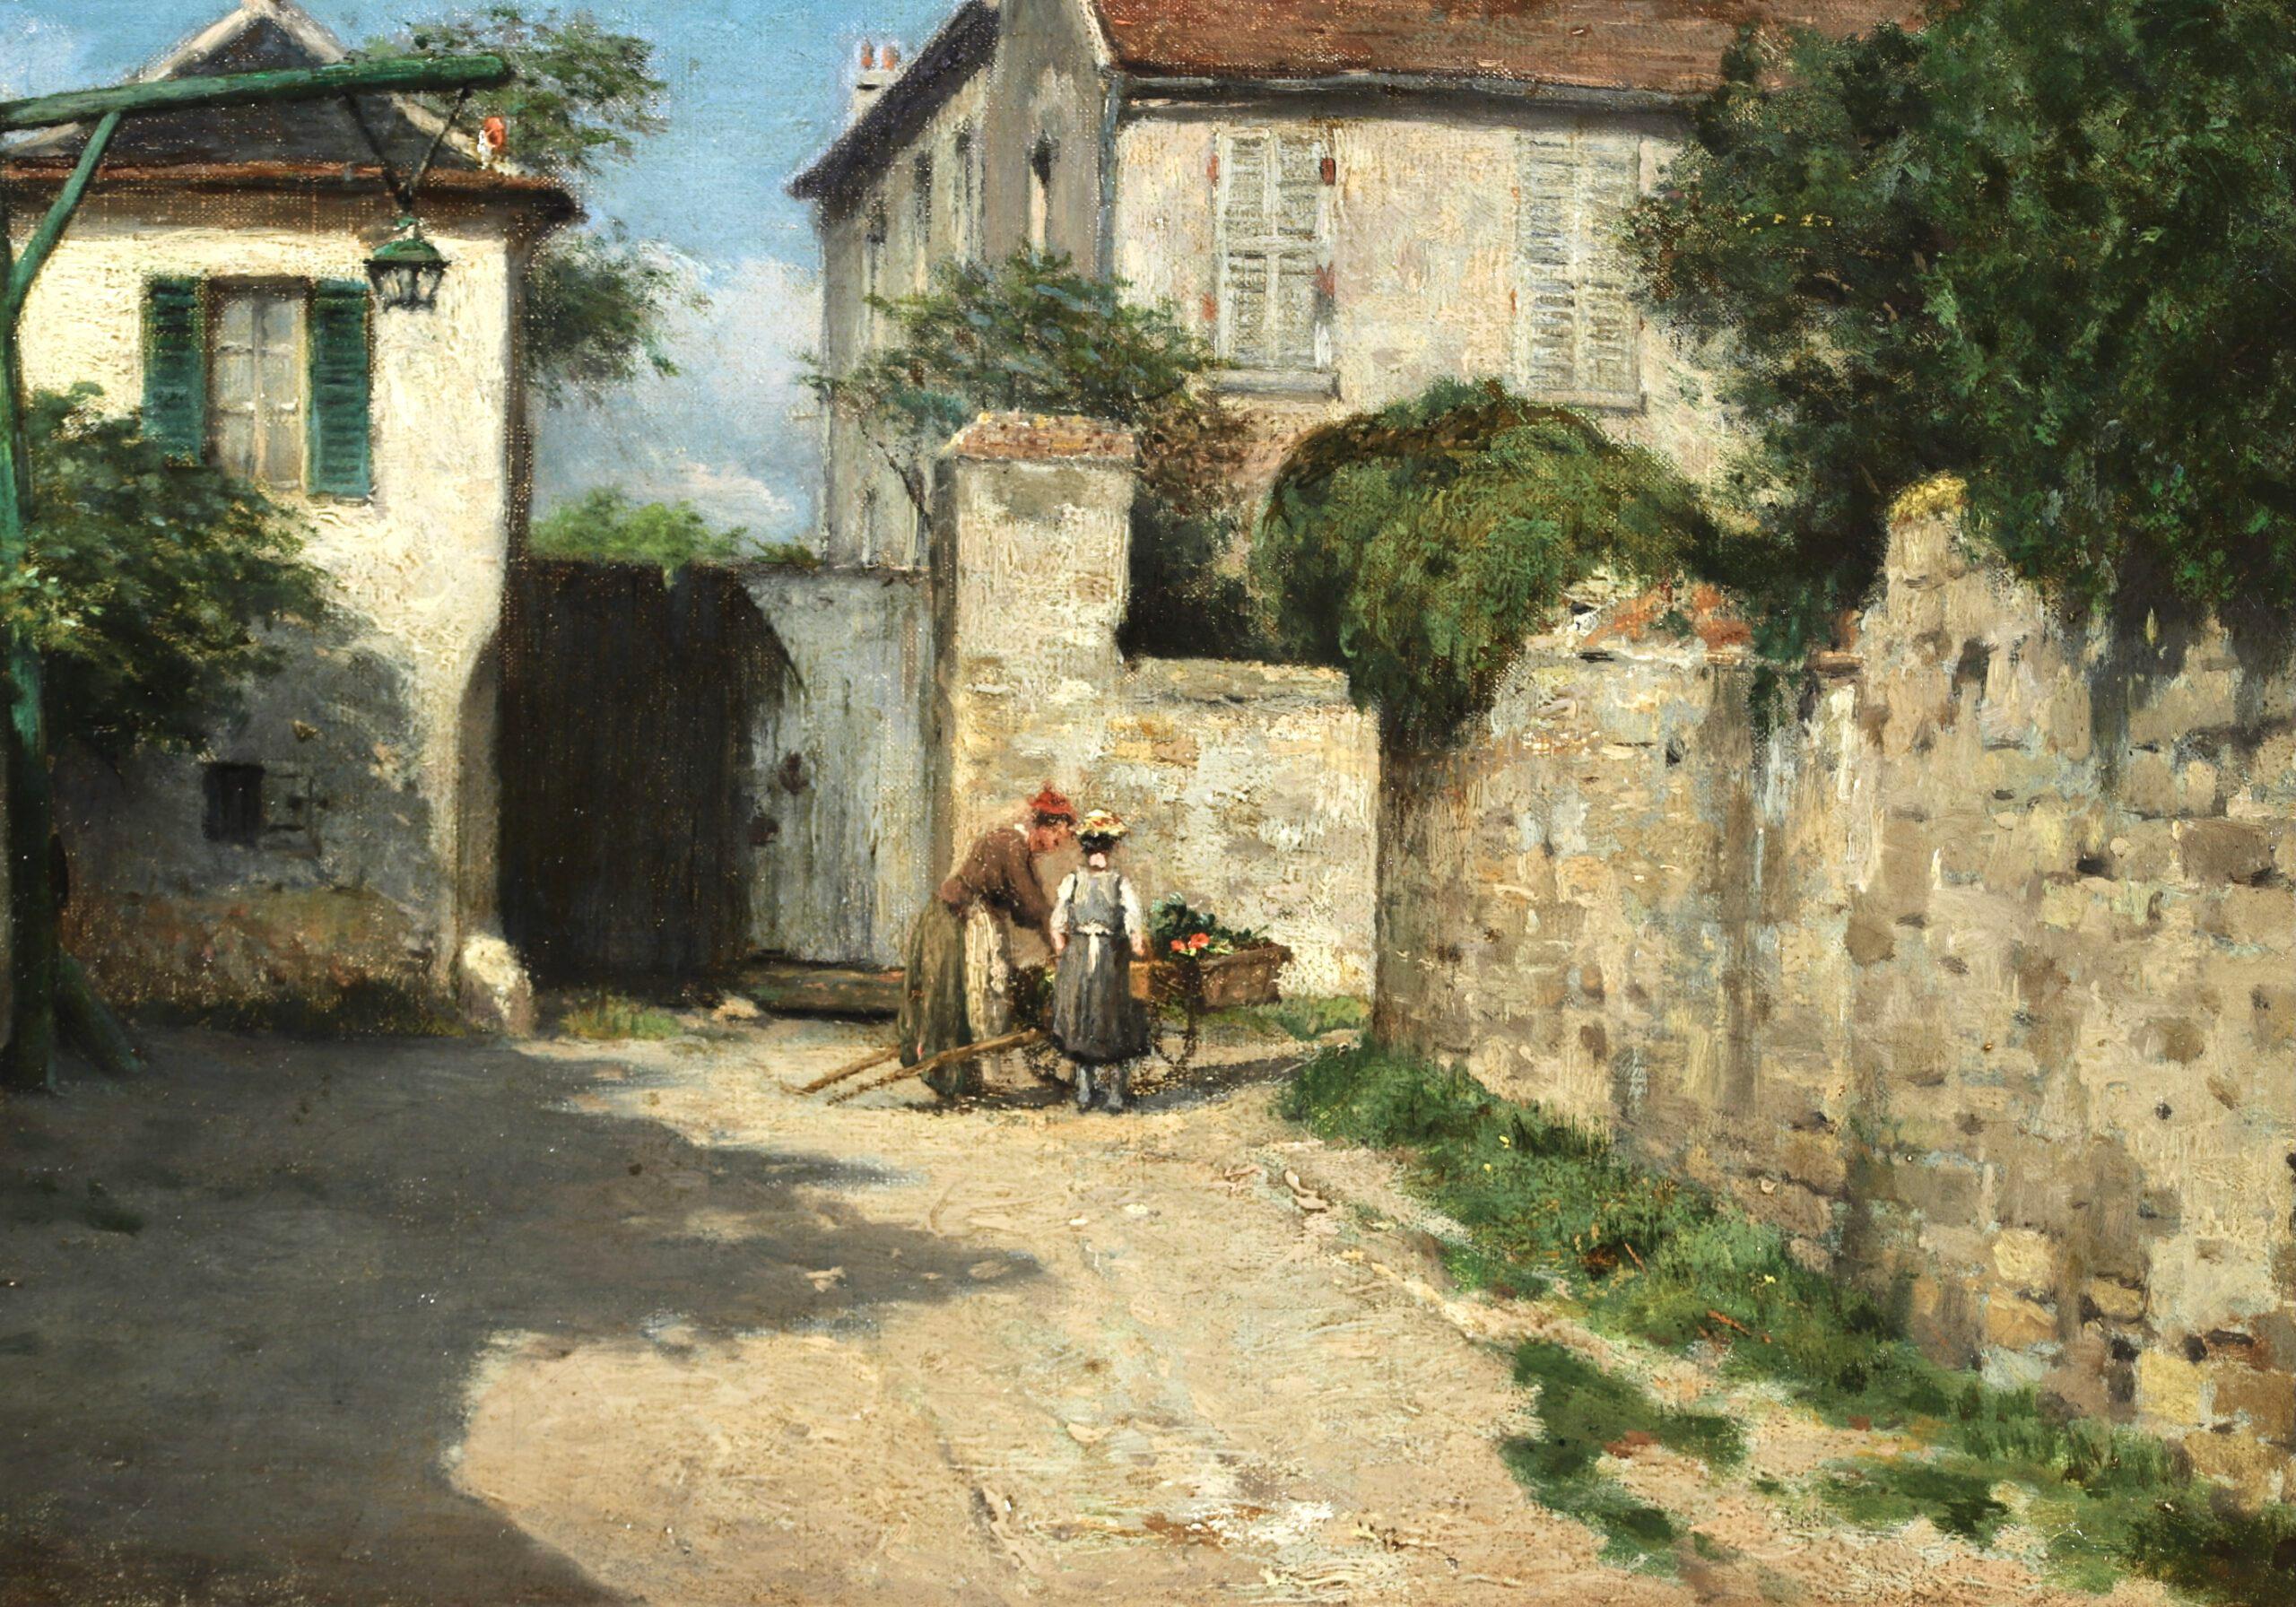 The Village - Auvers-sur-Oise - Impressionist Landscape Painting - Victor Vignon For Sale 1